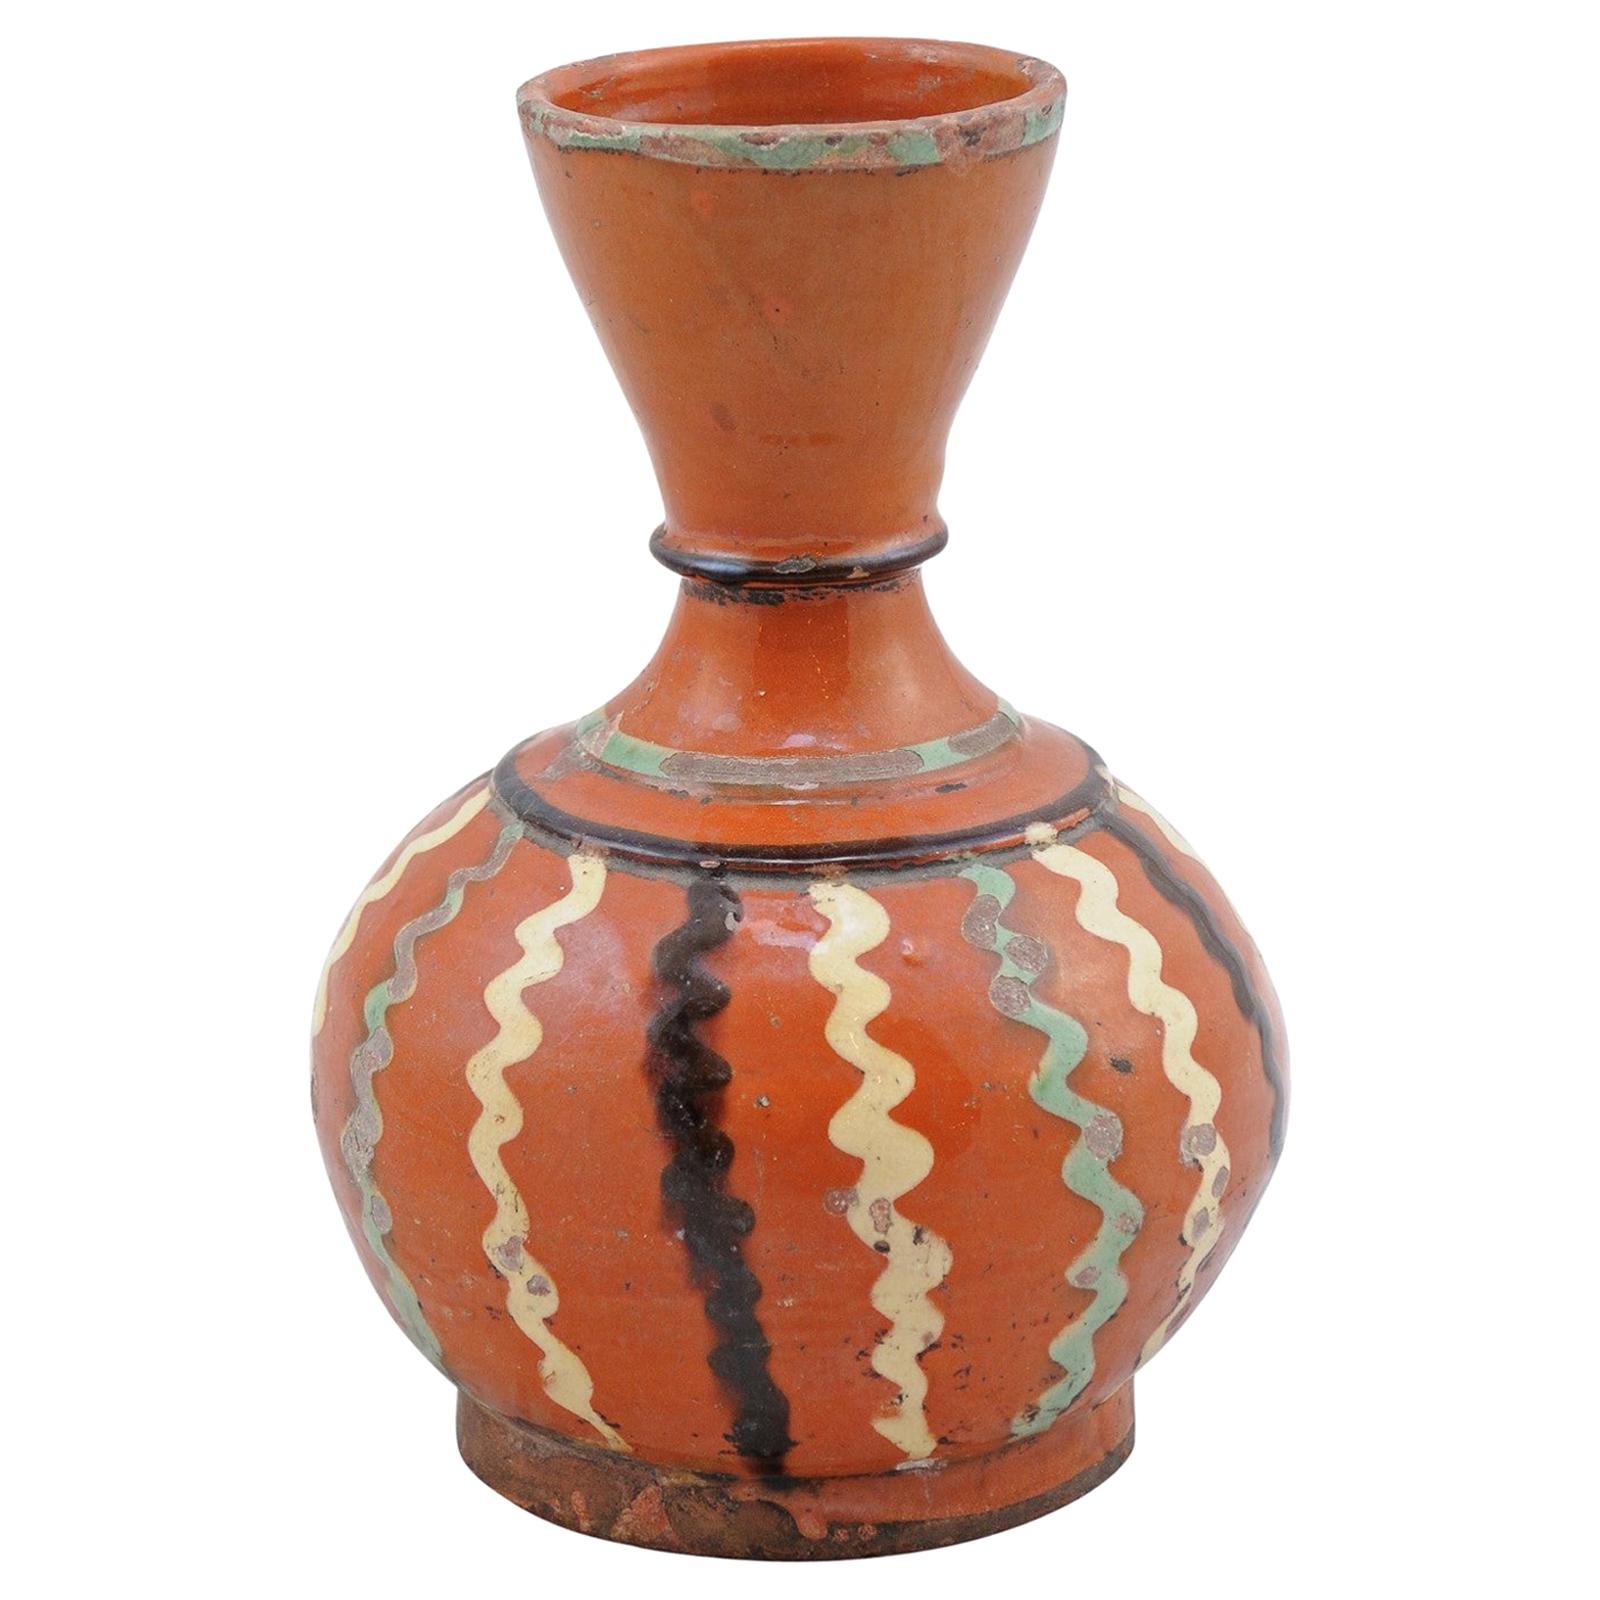 Pichet de service à vin en poterie de jaspe du 19ème siècle avec glaçure rouille, décor ondulé